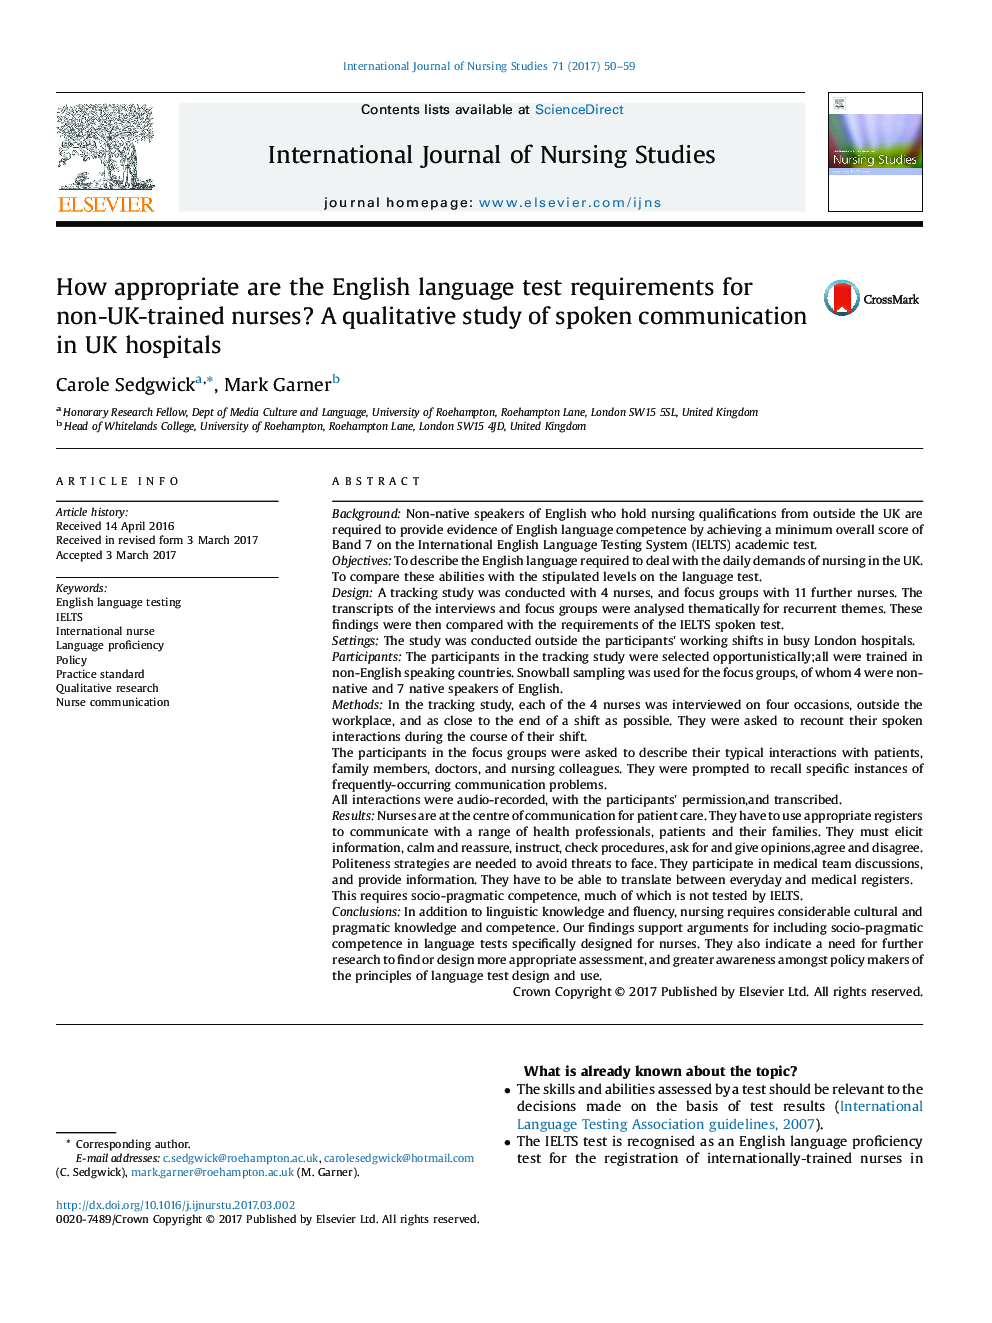 آیا آزمونهای زبان انگلیسی برای پرستاران آموزش دیده غیر انگلیسی مناسب است؟ یک مطالعه کیفی ارتباطات گفتاری در بیمارستان های انگلستان 